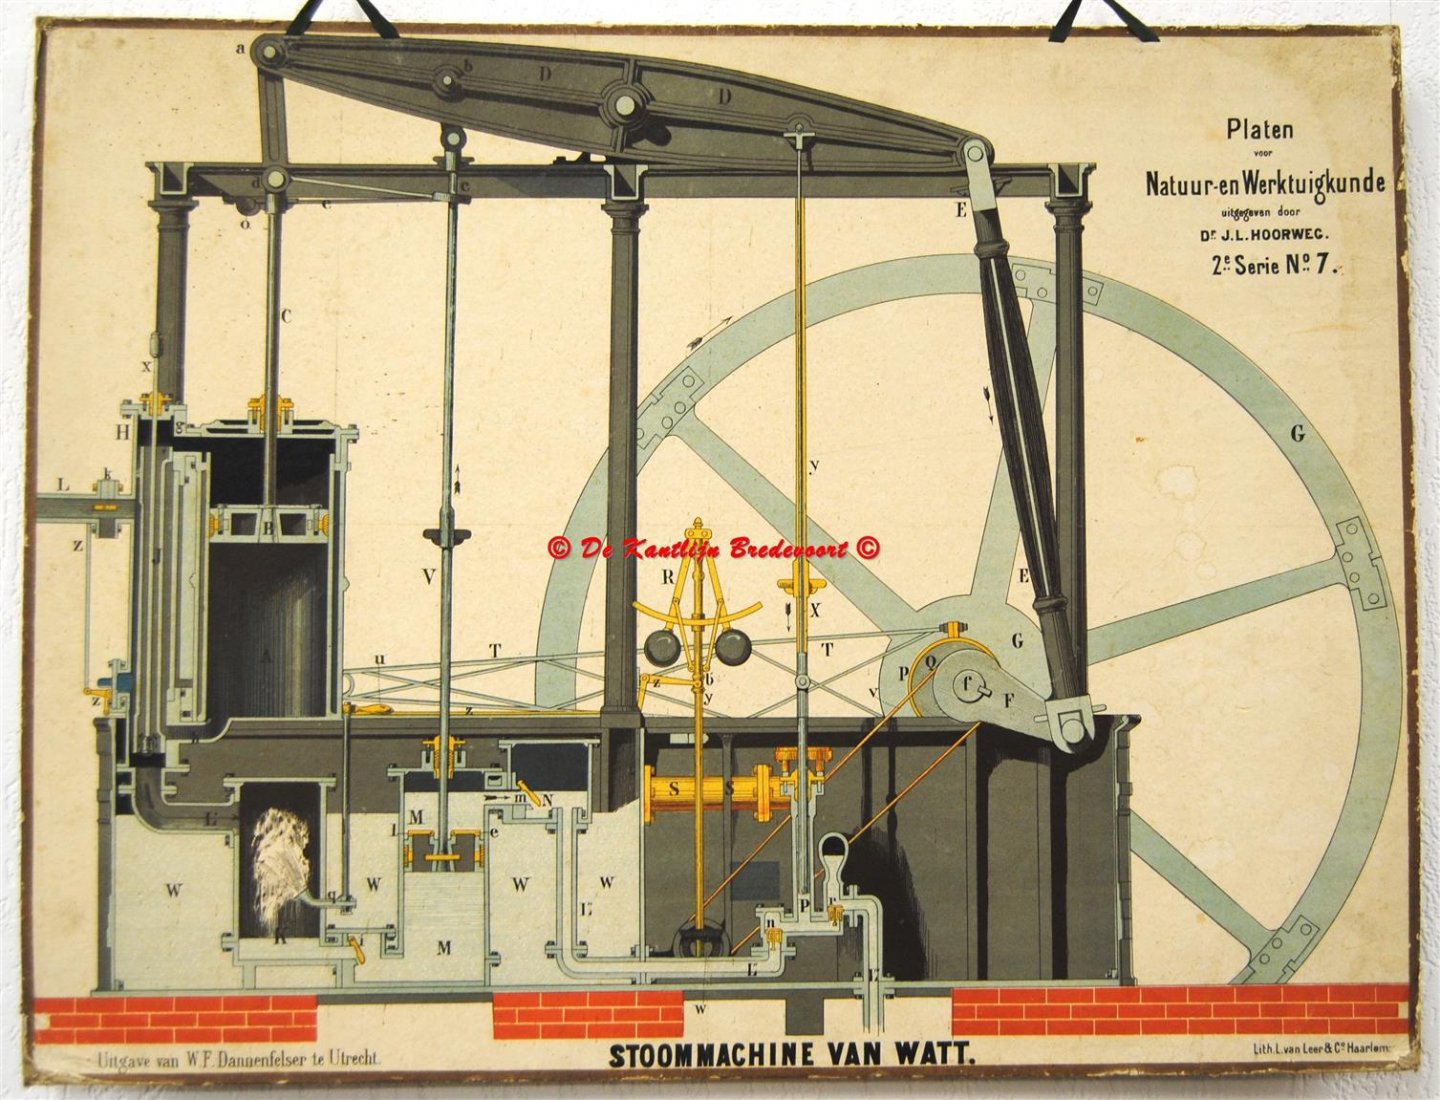 Hoorweg Dr. J.L. - (SCHOOLPLAAT - SCHOOL POSTER / MAP - LEHRTAFEL) Stoommachine van Watt  2e Serie No 7 = Watt steam engine